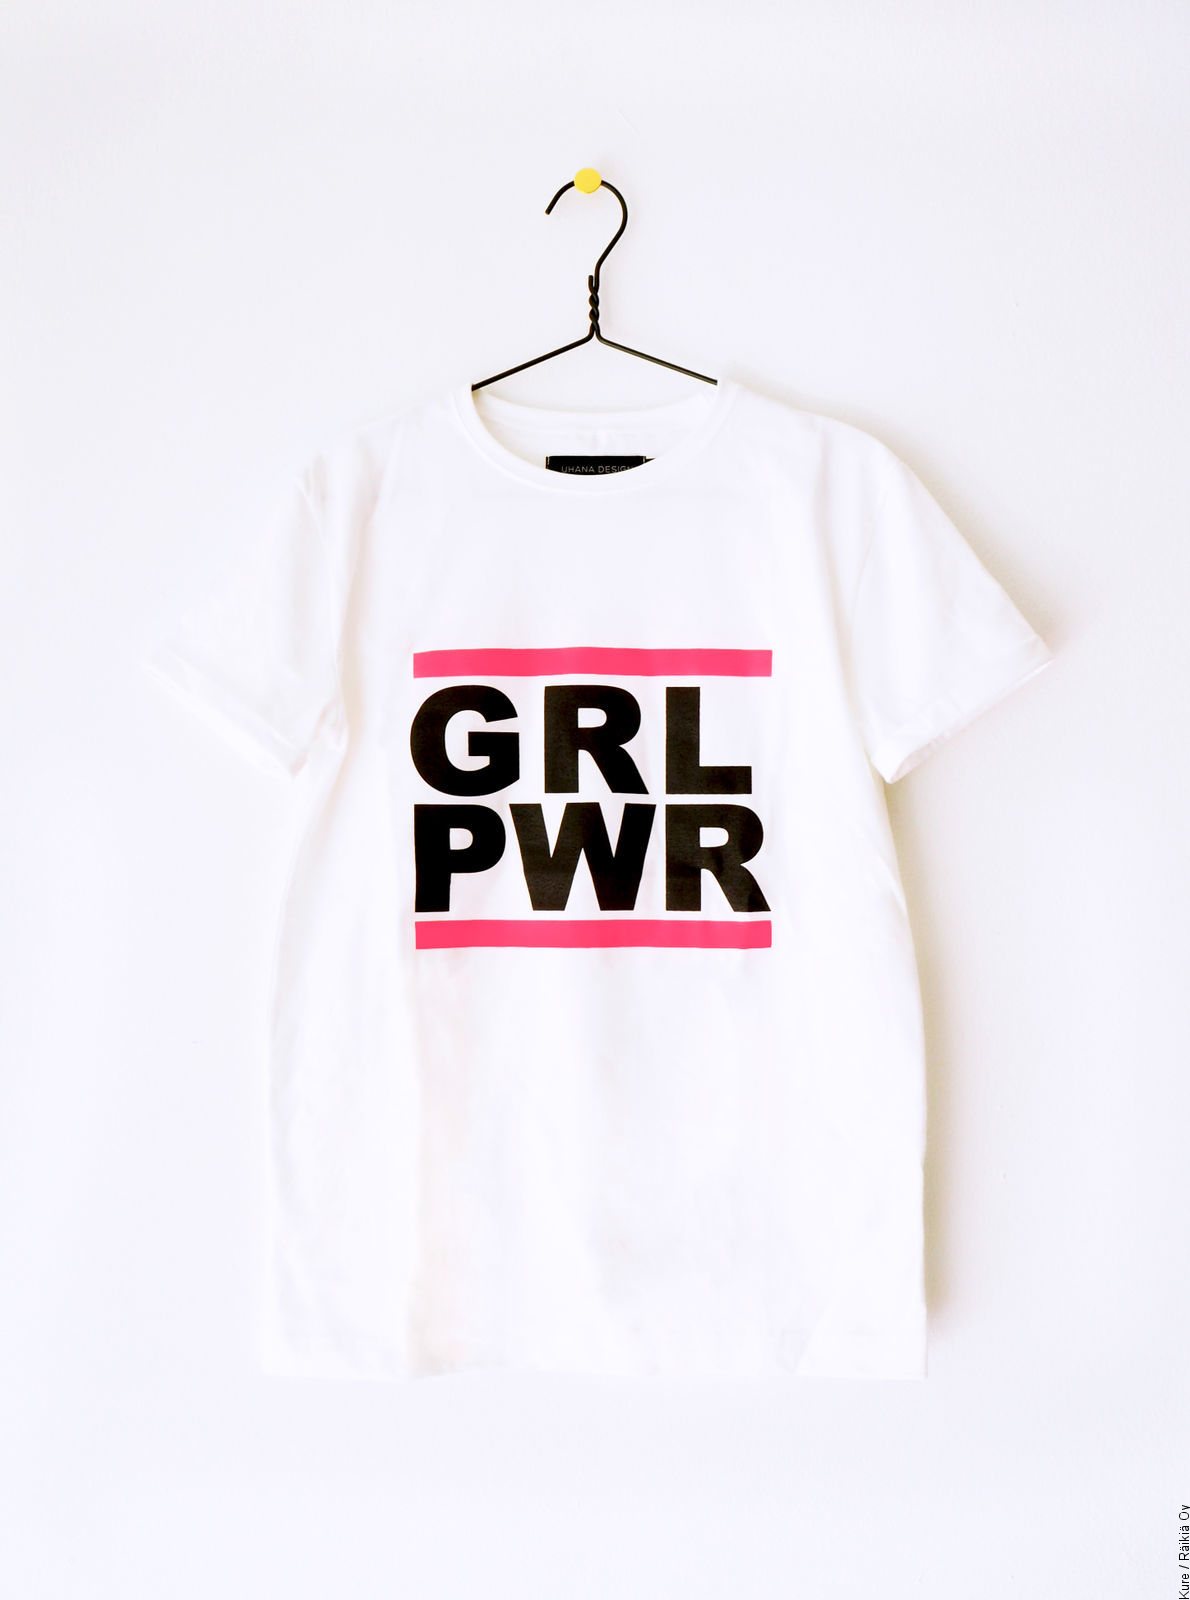 GLR PWR -paita, valkoinen 49€